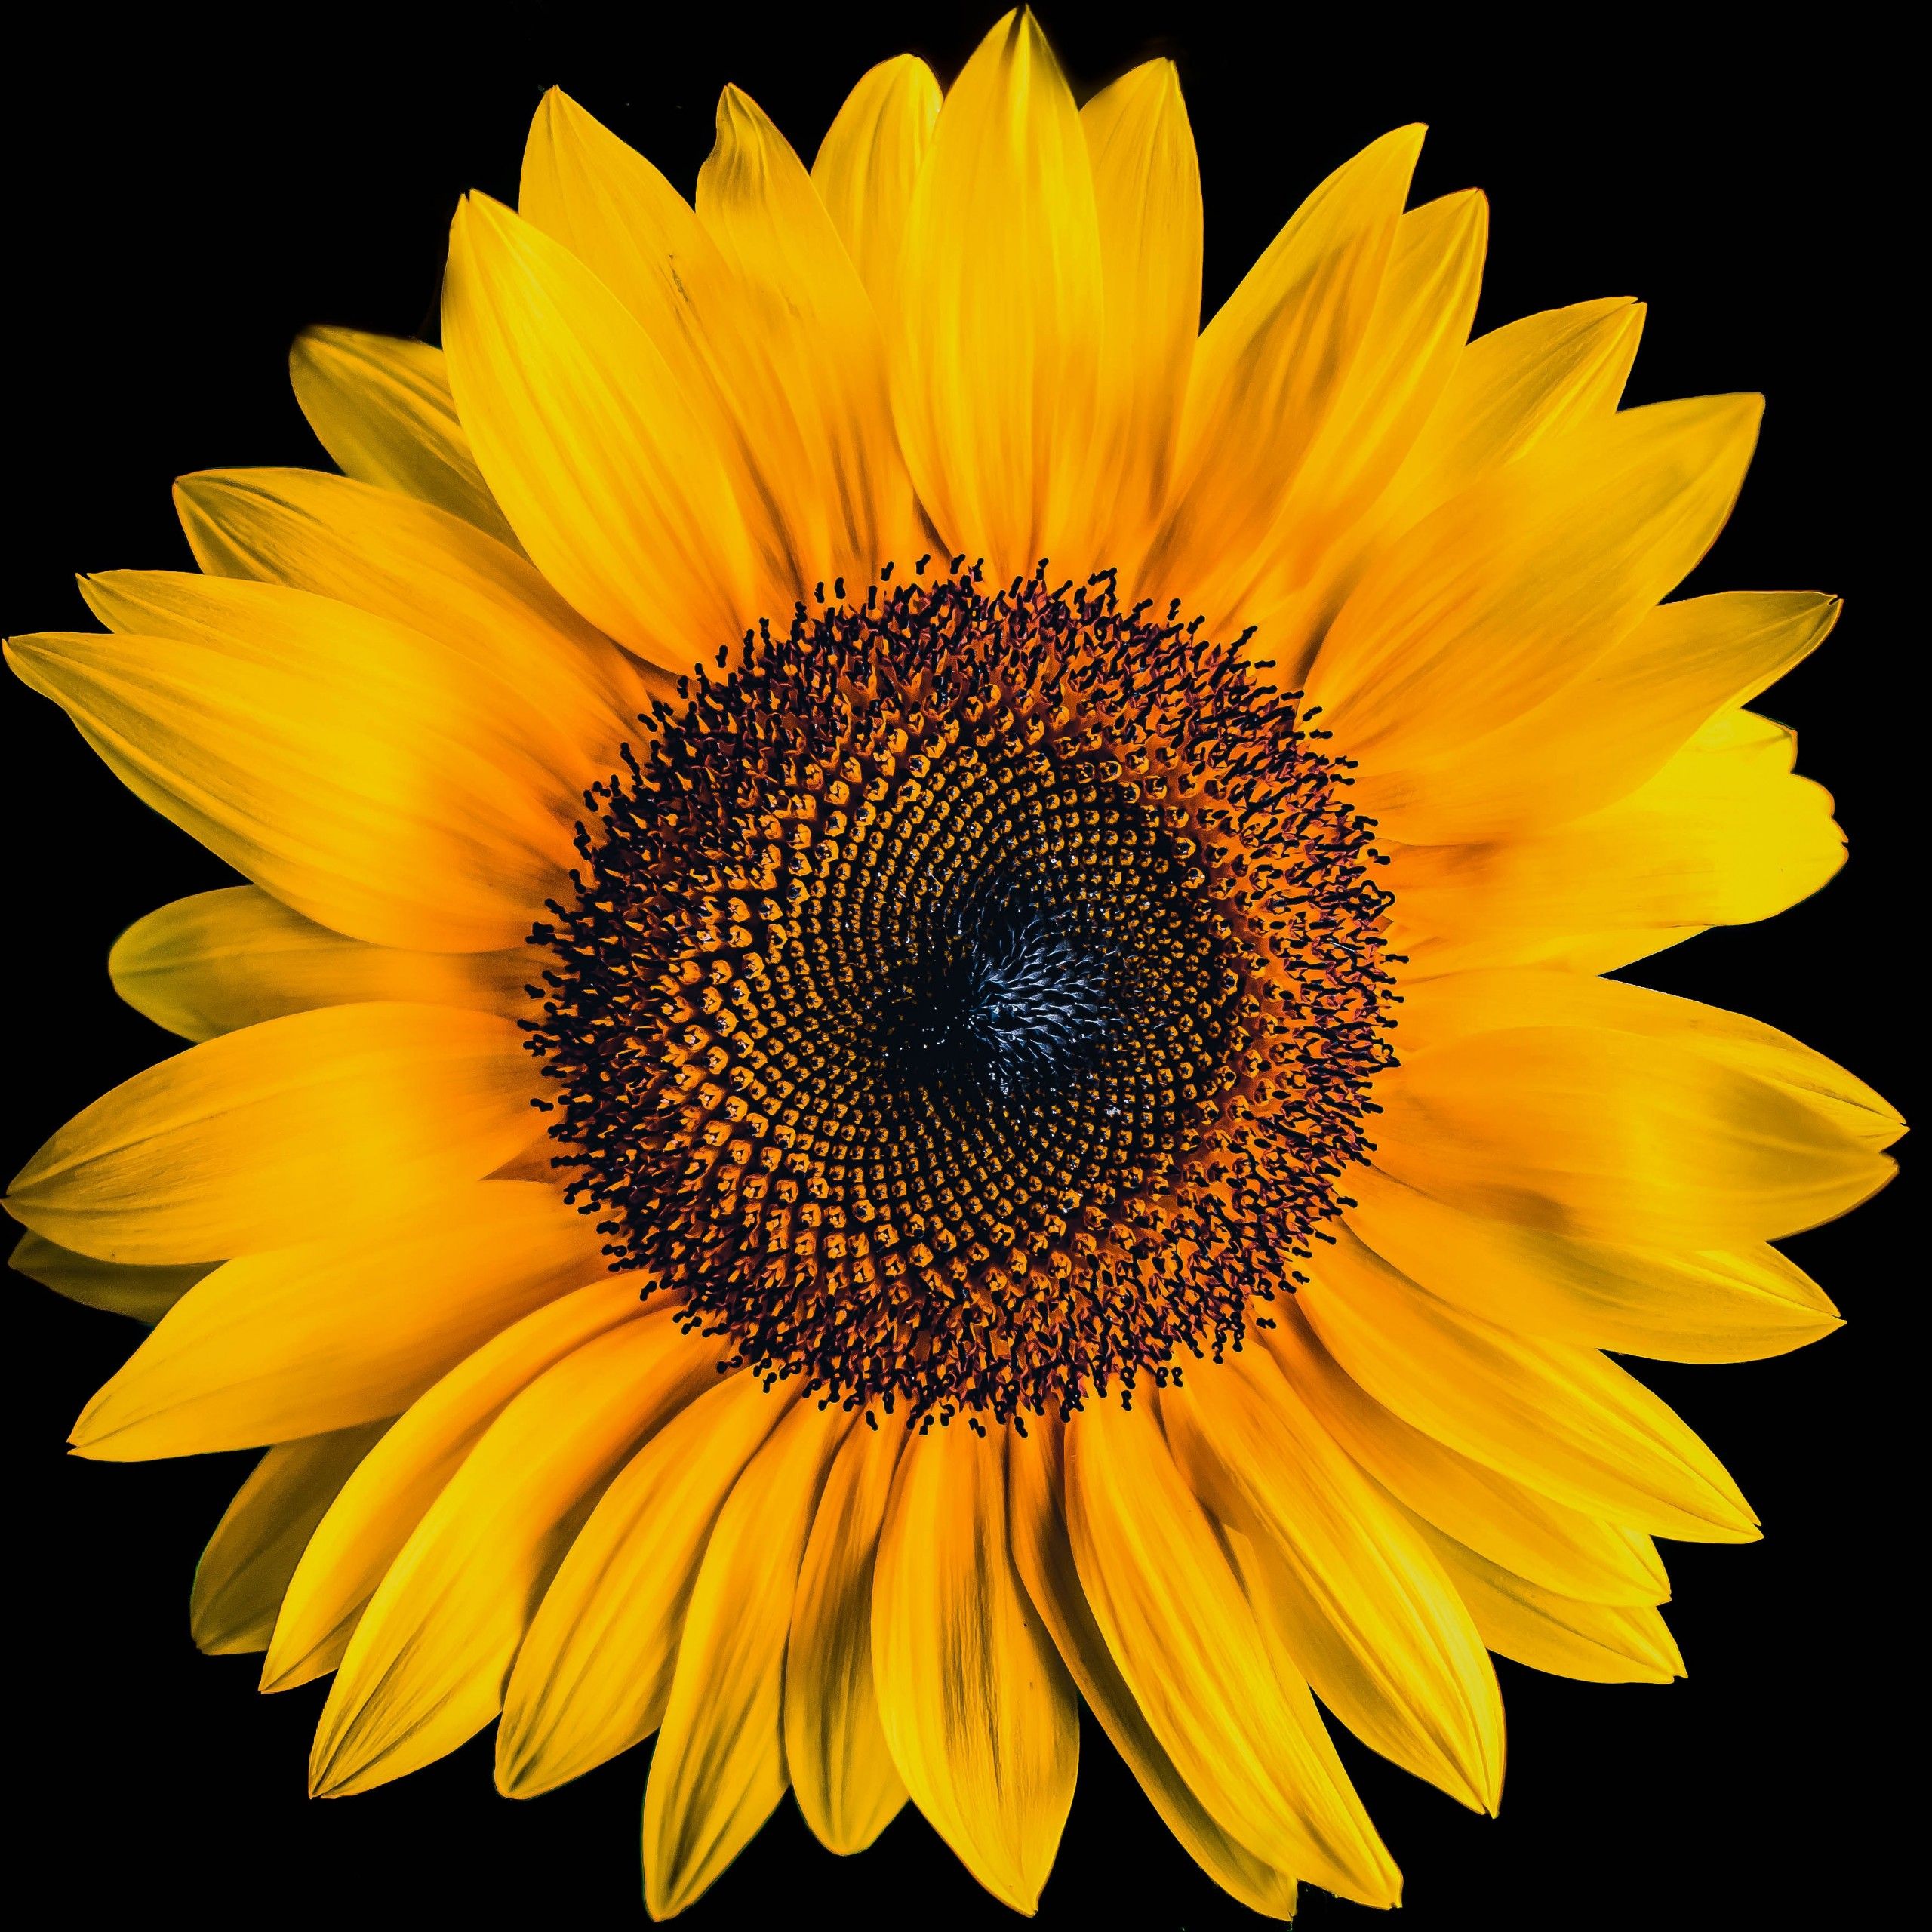 Sunflower 4K Wallpaper, Black background, Yellow flower, 5K, Flowers